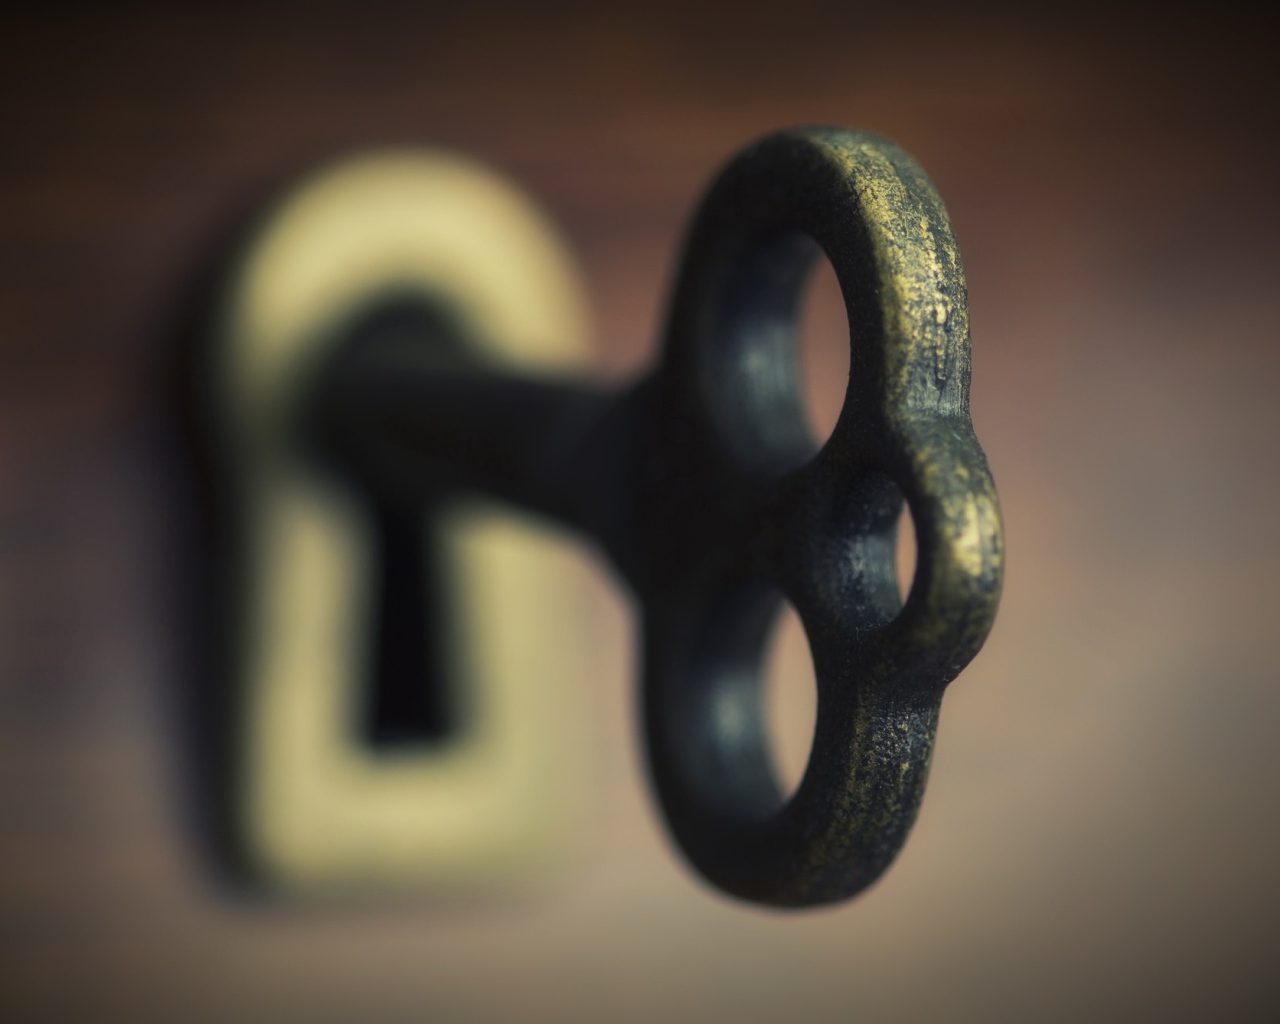 Key iron key in the keyhole